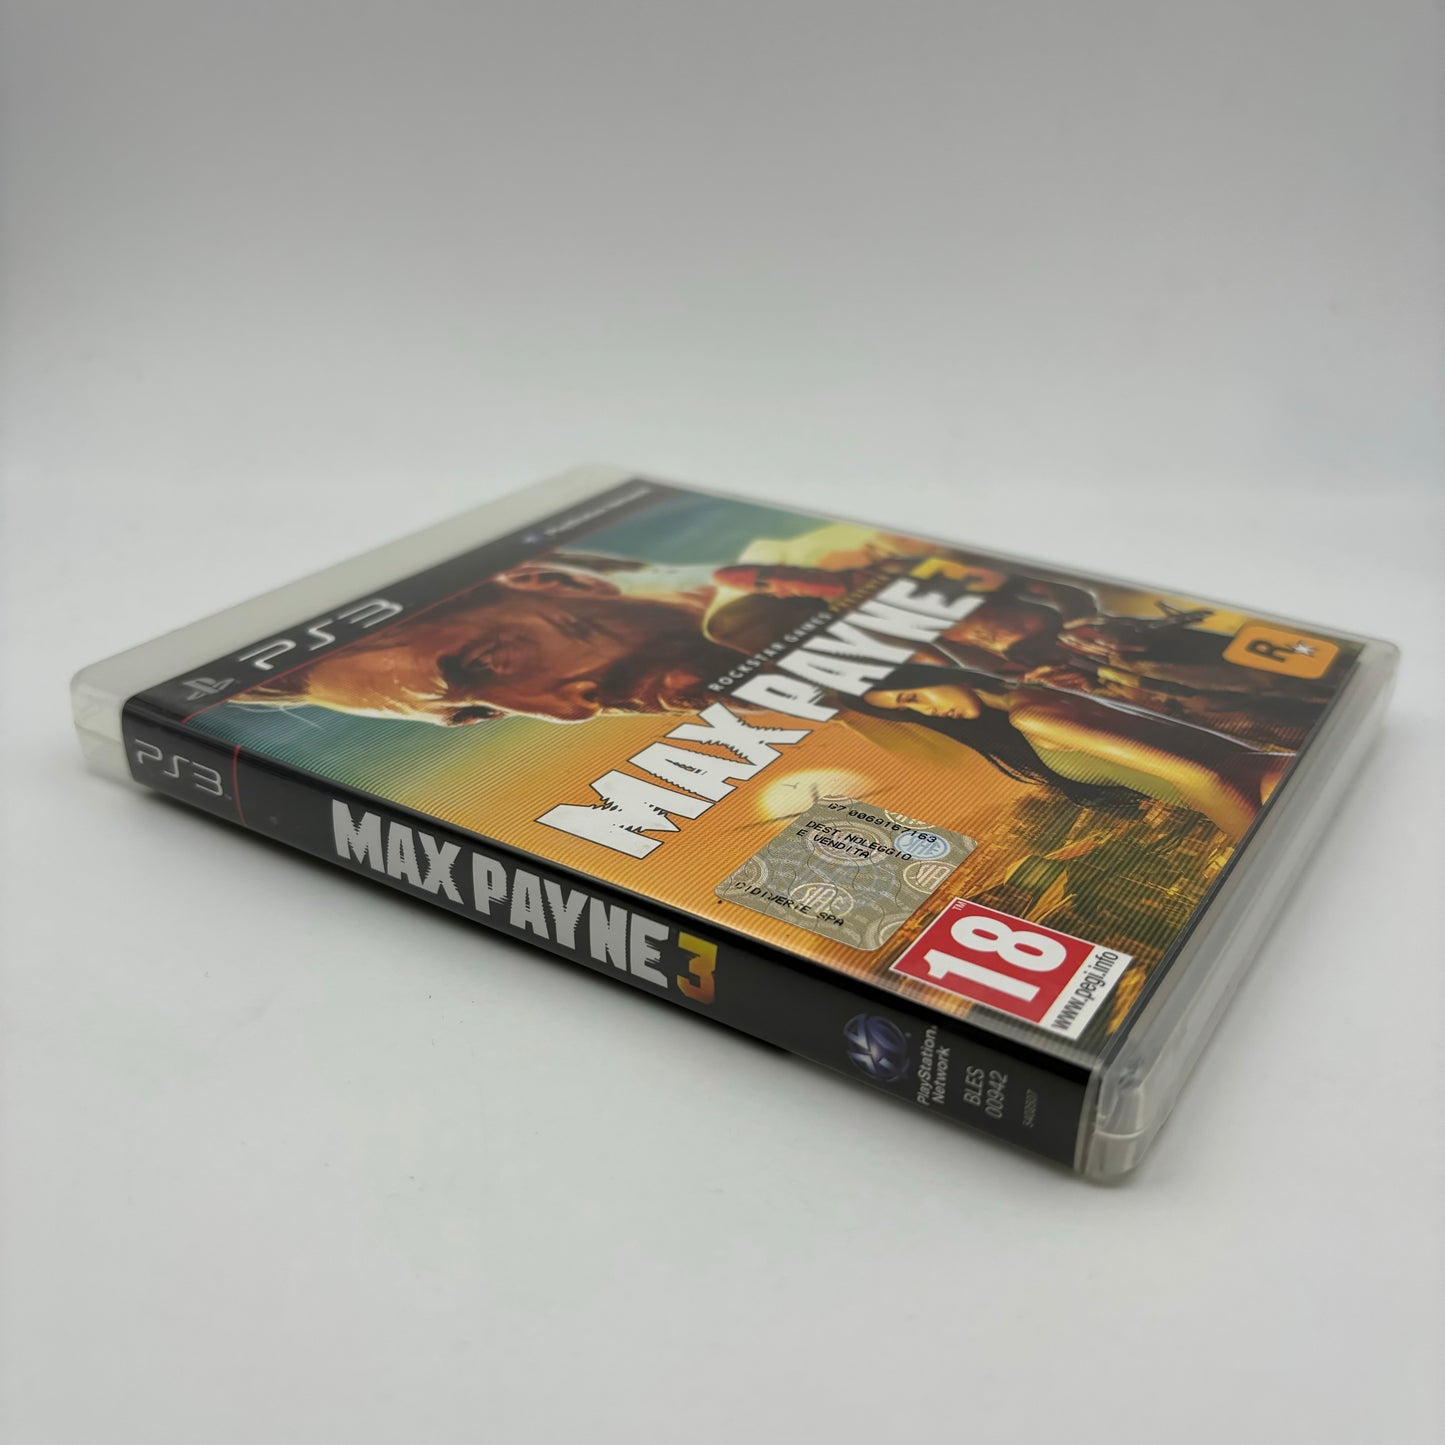 Max Payne 3 Ps3 Pal Ita (USATO)